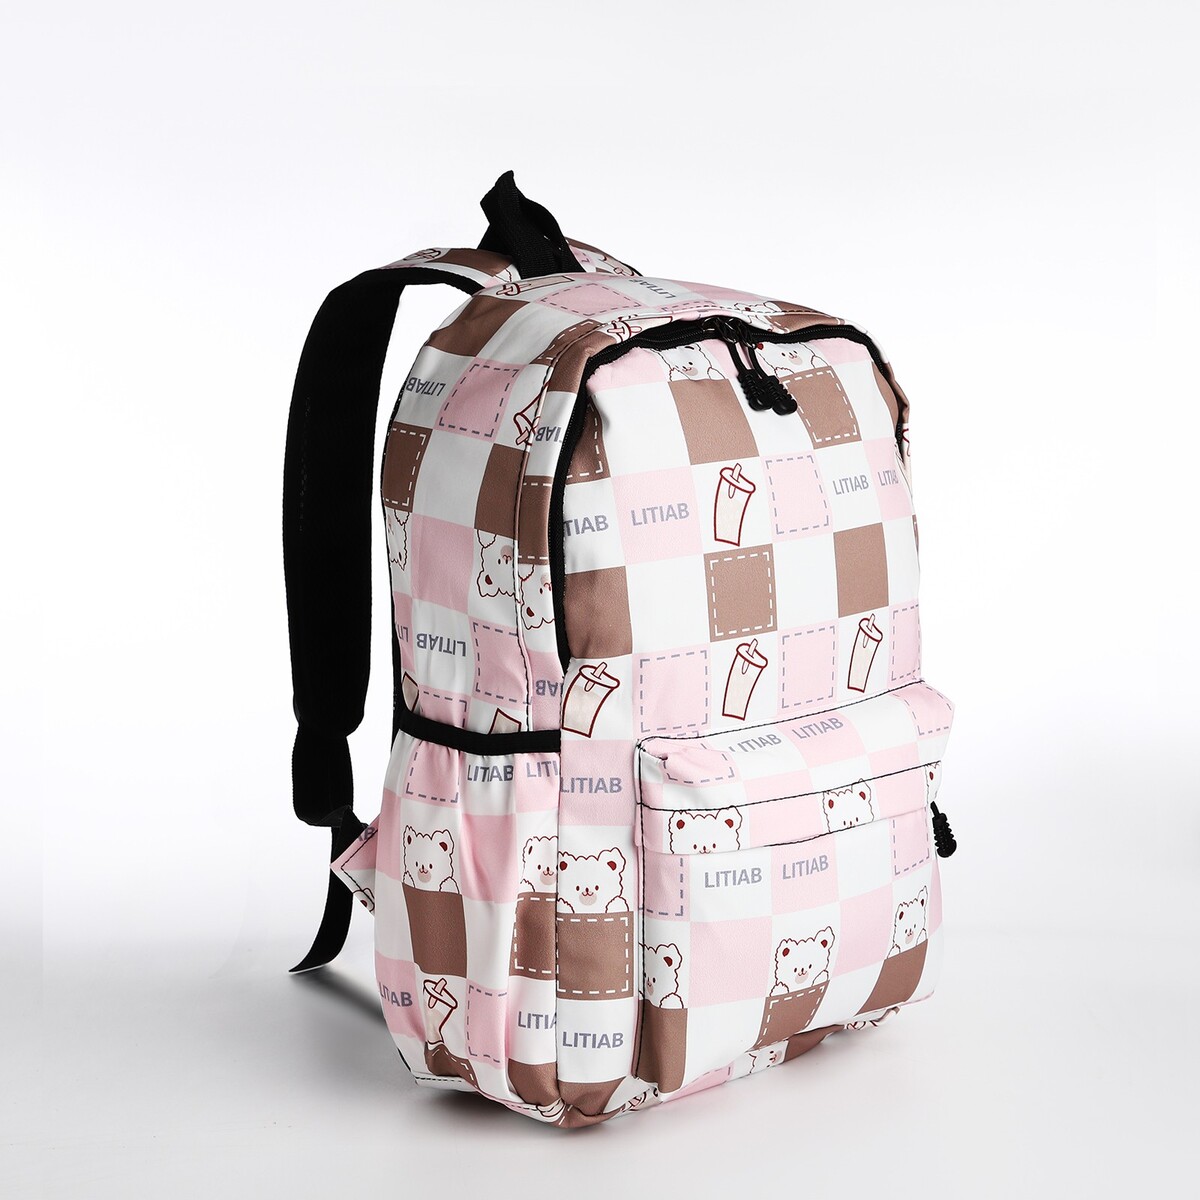 Рюкзак молодежный из текстиля, 3 кармана, цвет бежевый/розовый рюкзак молодежный из текстиля на молнии 2 кармана розовый